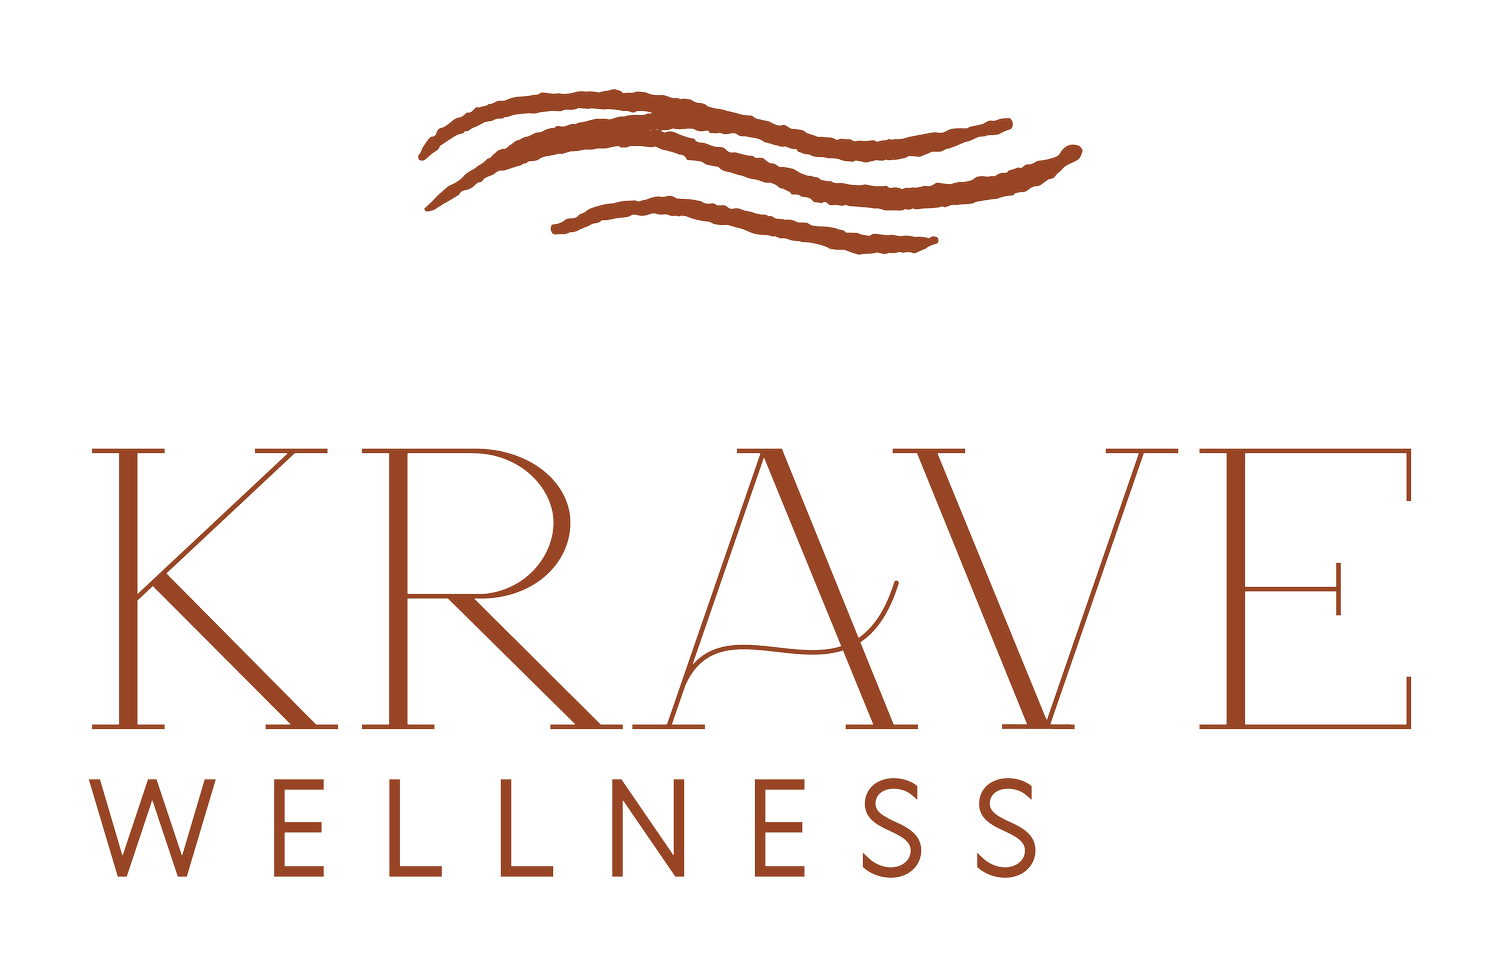 Krave Wellness